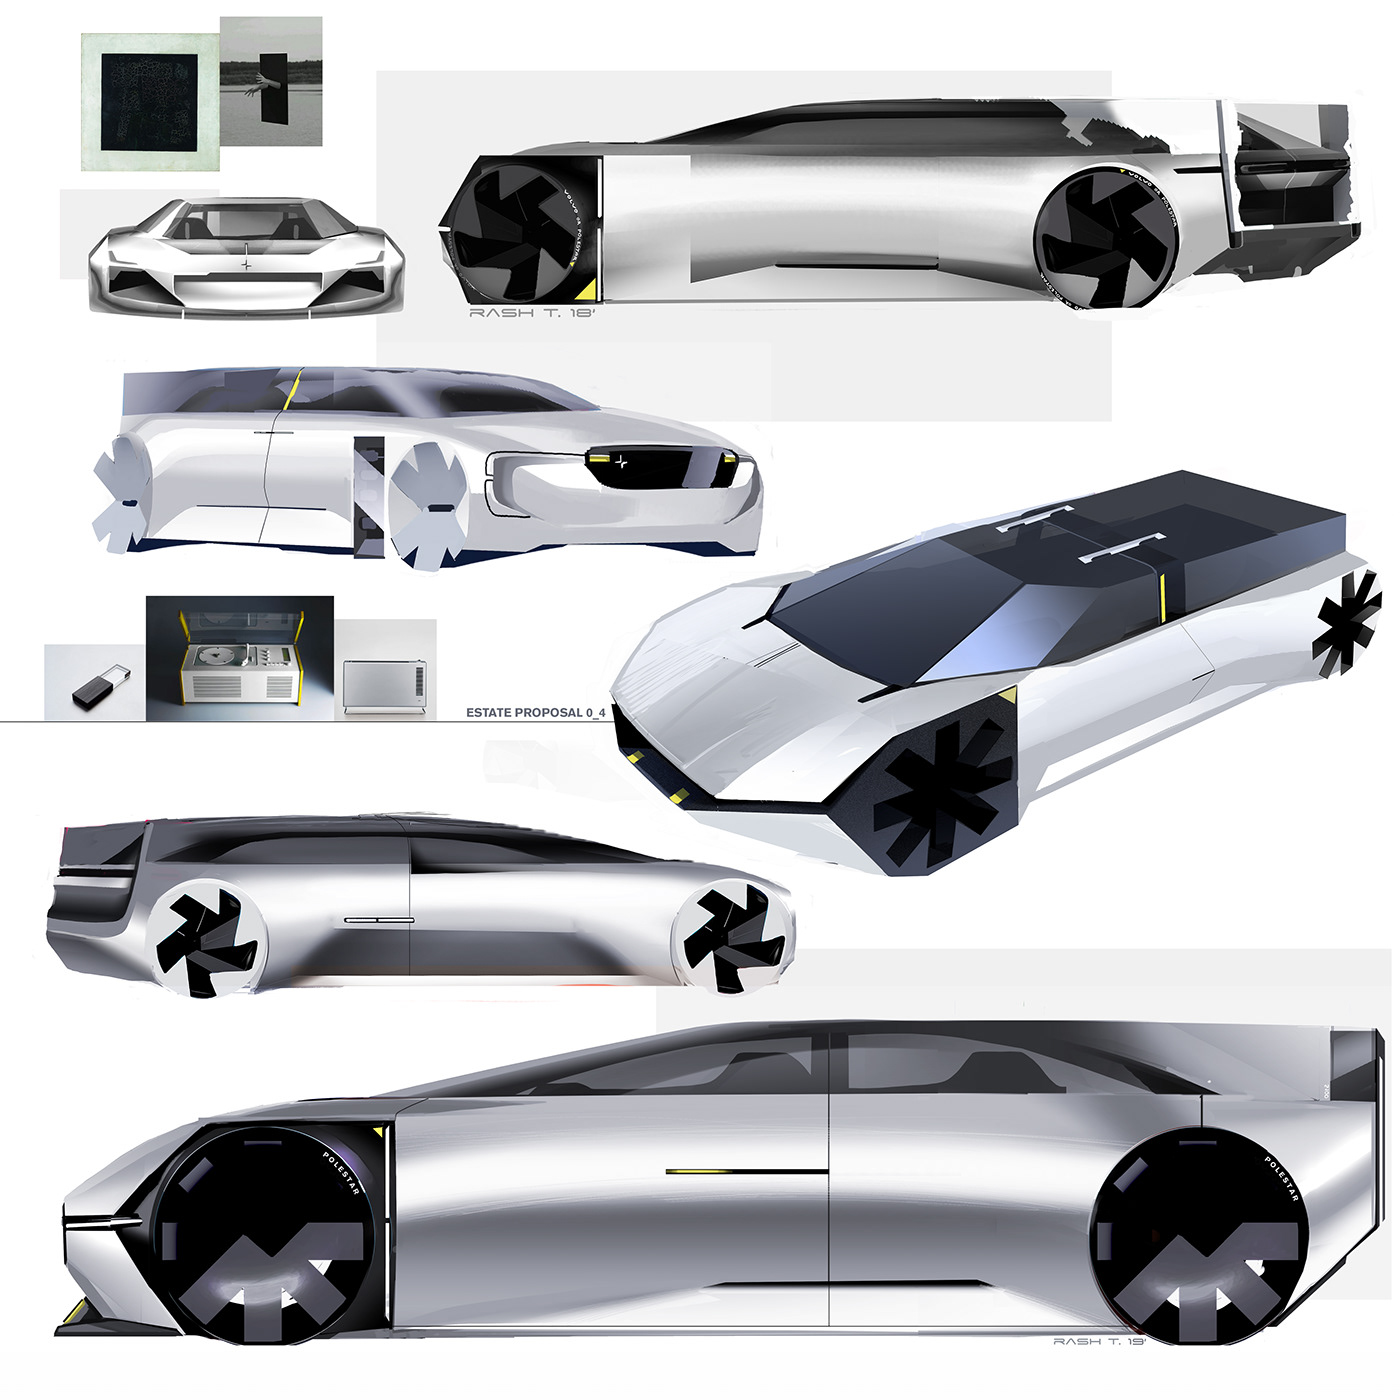 Polestar Transportation Design design car design Volvo Automotive design car Autonomous vehicle Project concept car